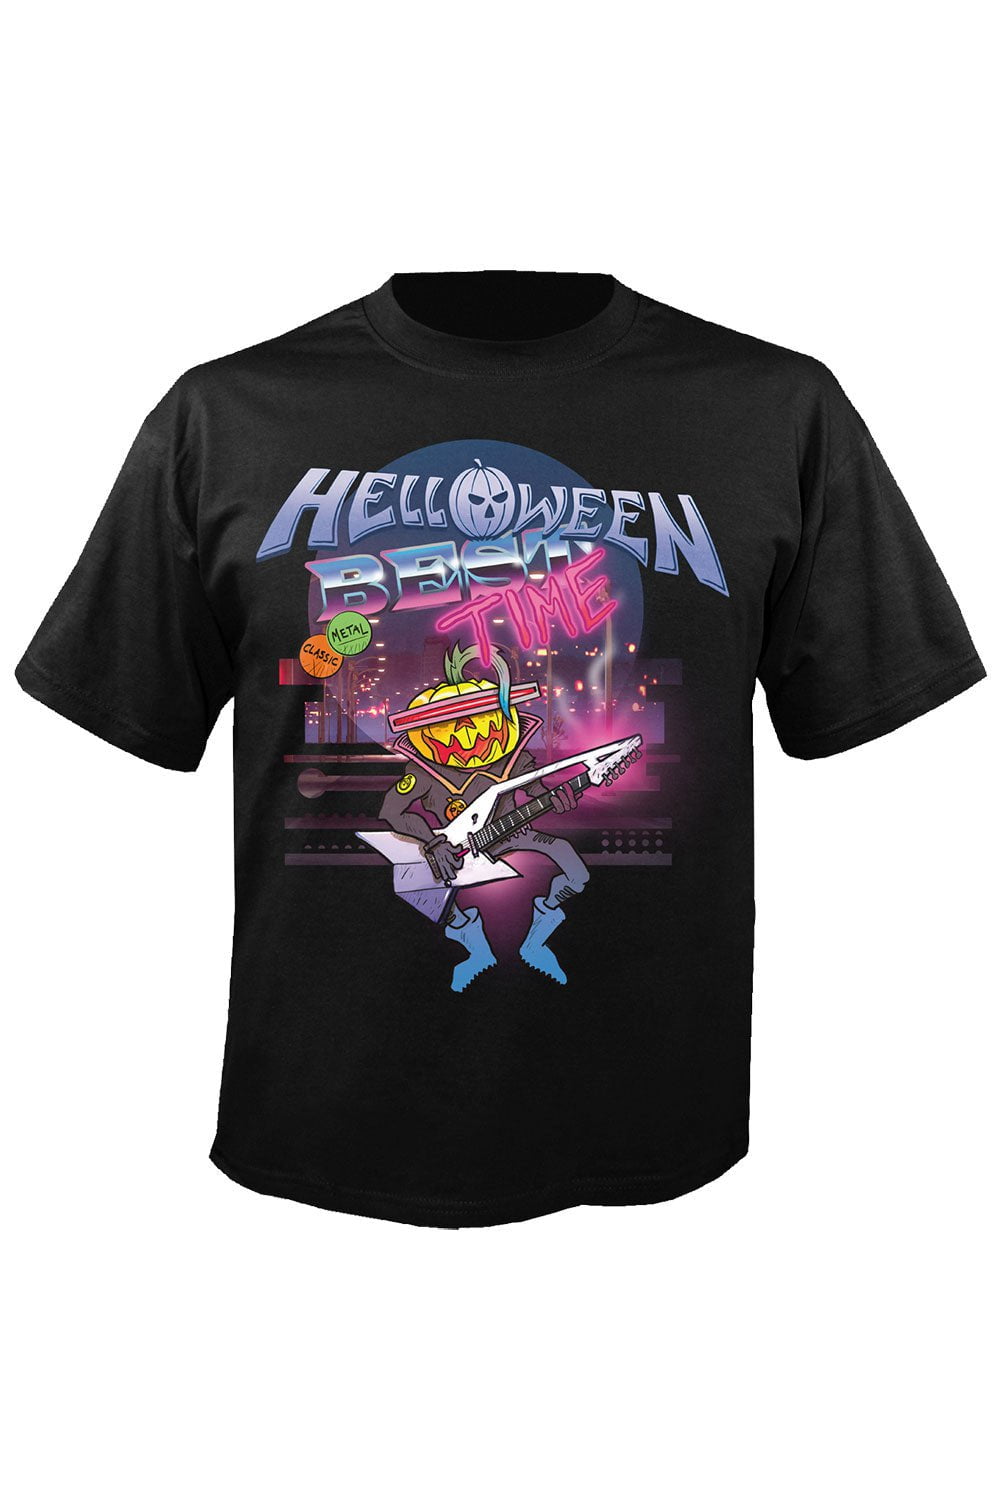 Shirt Helloween Best Time Official T-Shirt